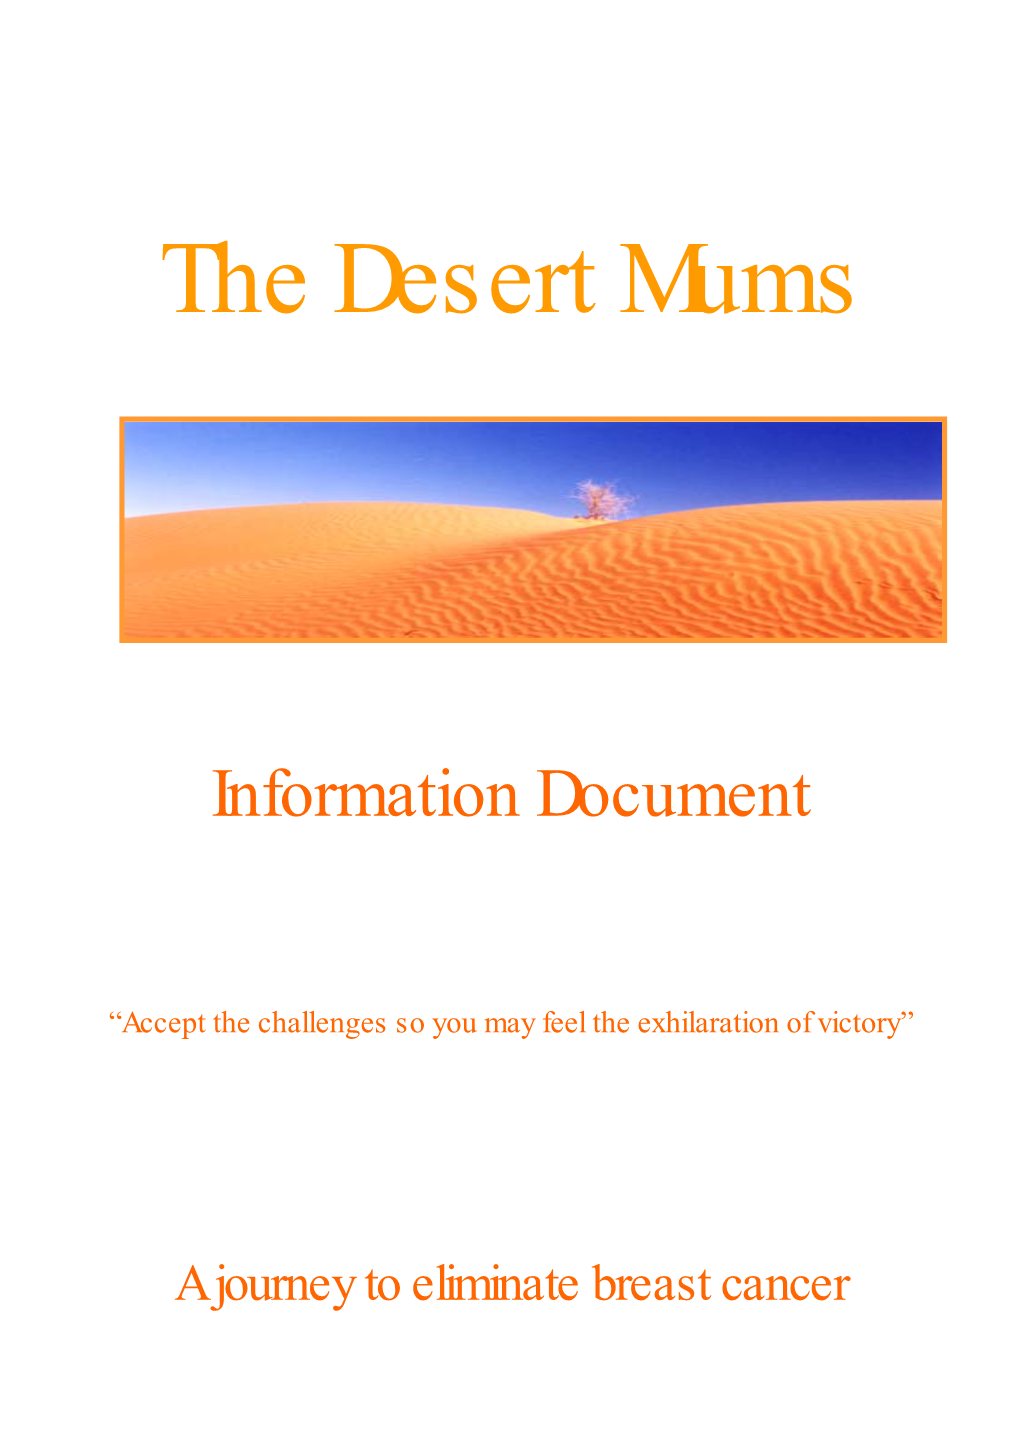 The Desert Mums